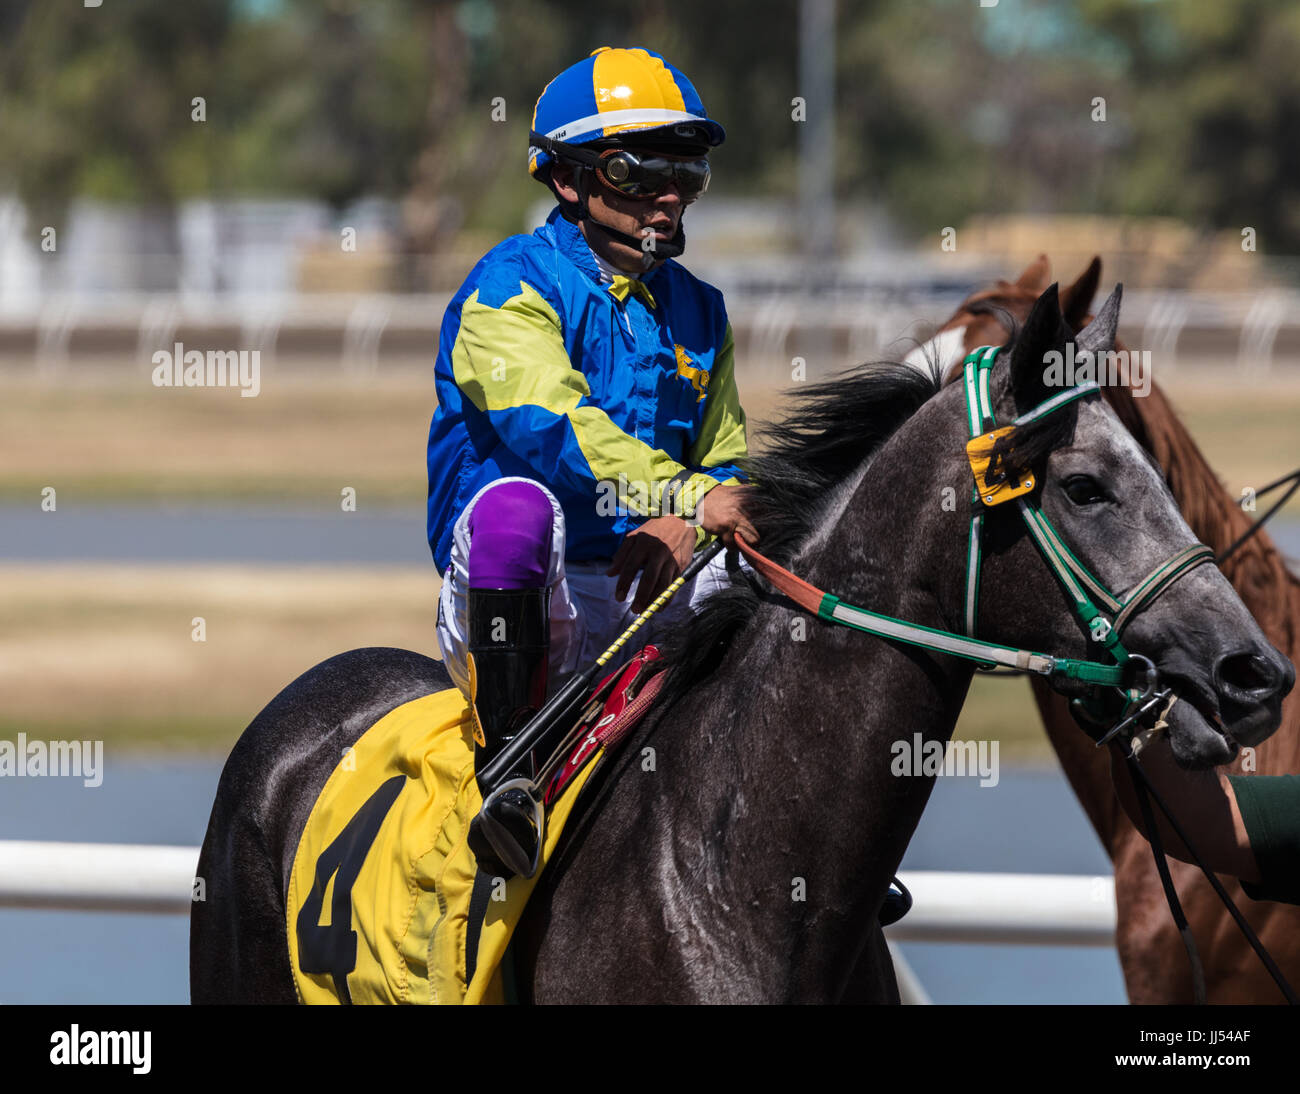 Horse racing action at the Cal Expo in Sacramento, California Stock